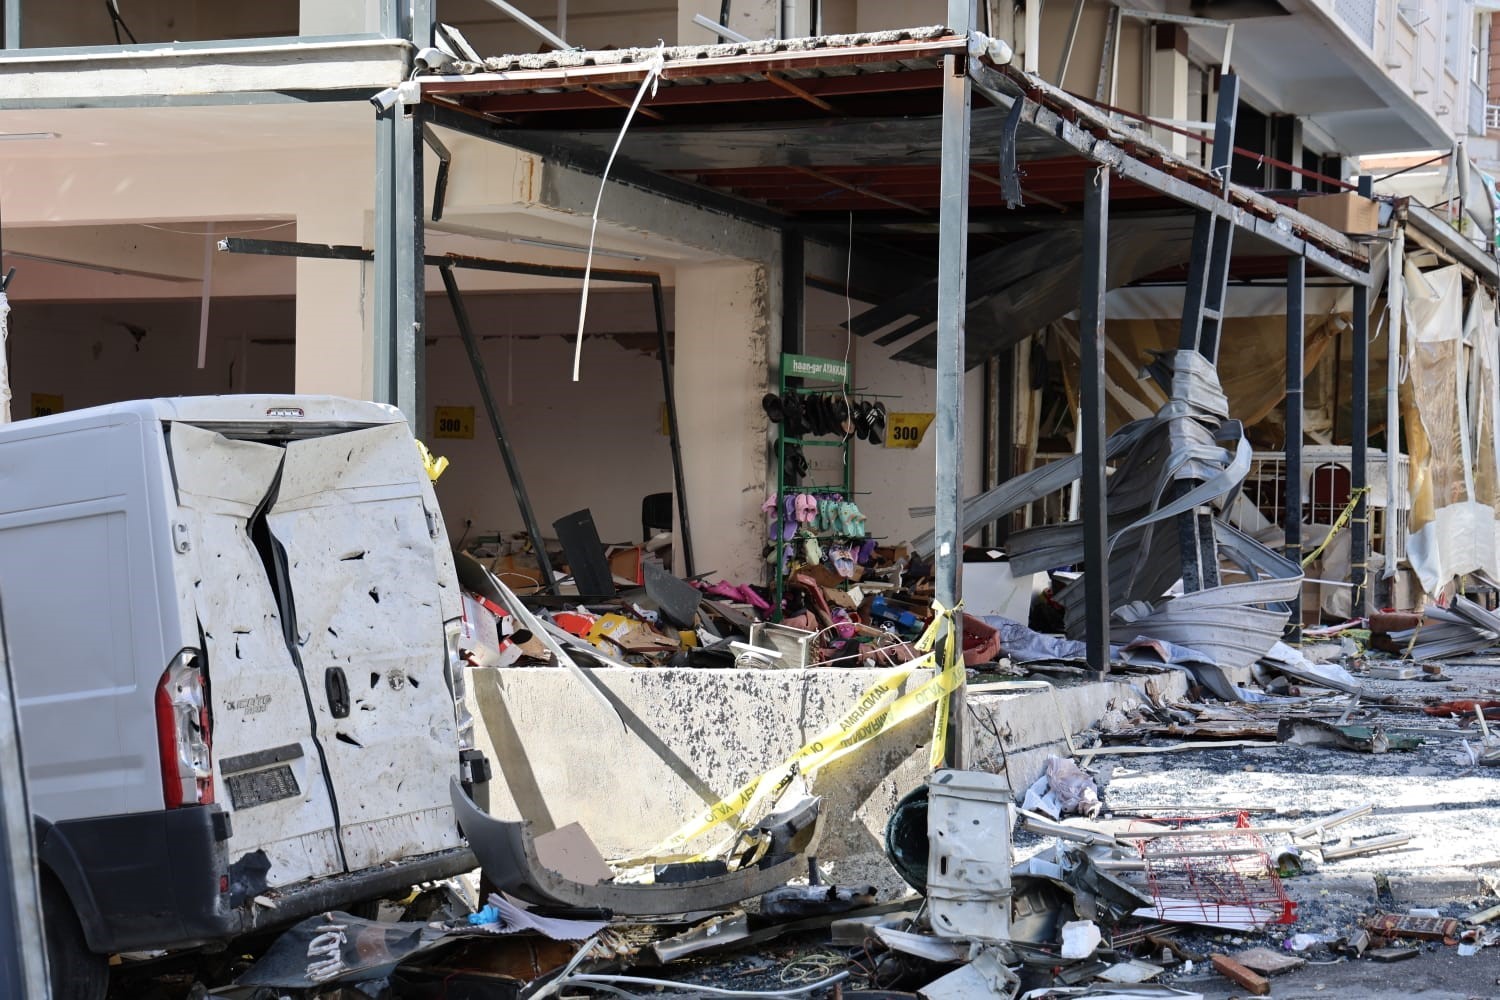 İzmir’in Torbalı ilçesinde, 5 kişinin öldüğü, 57 kişinin yaralandığı sanayi tipi tüp patlamasına ilişkin, iş yerinde tüpü değiştiren kişinin gözaltına alındığı öğrenildi.
